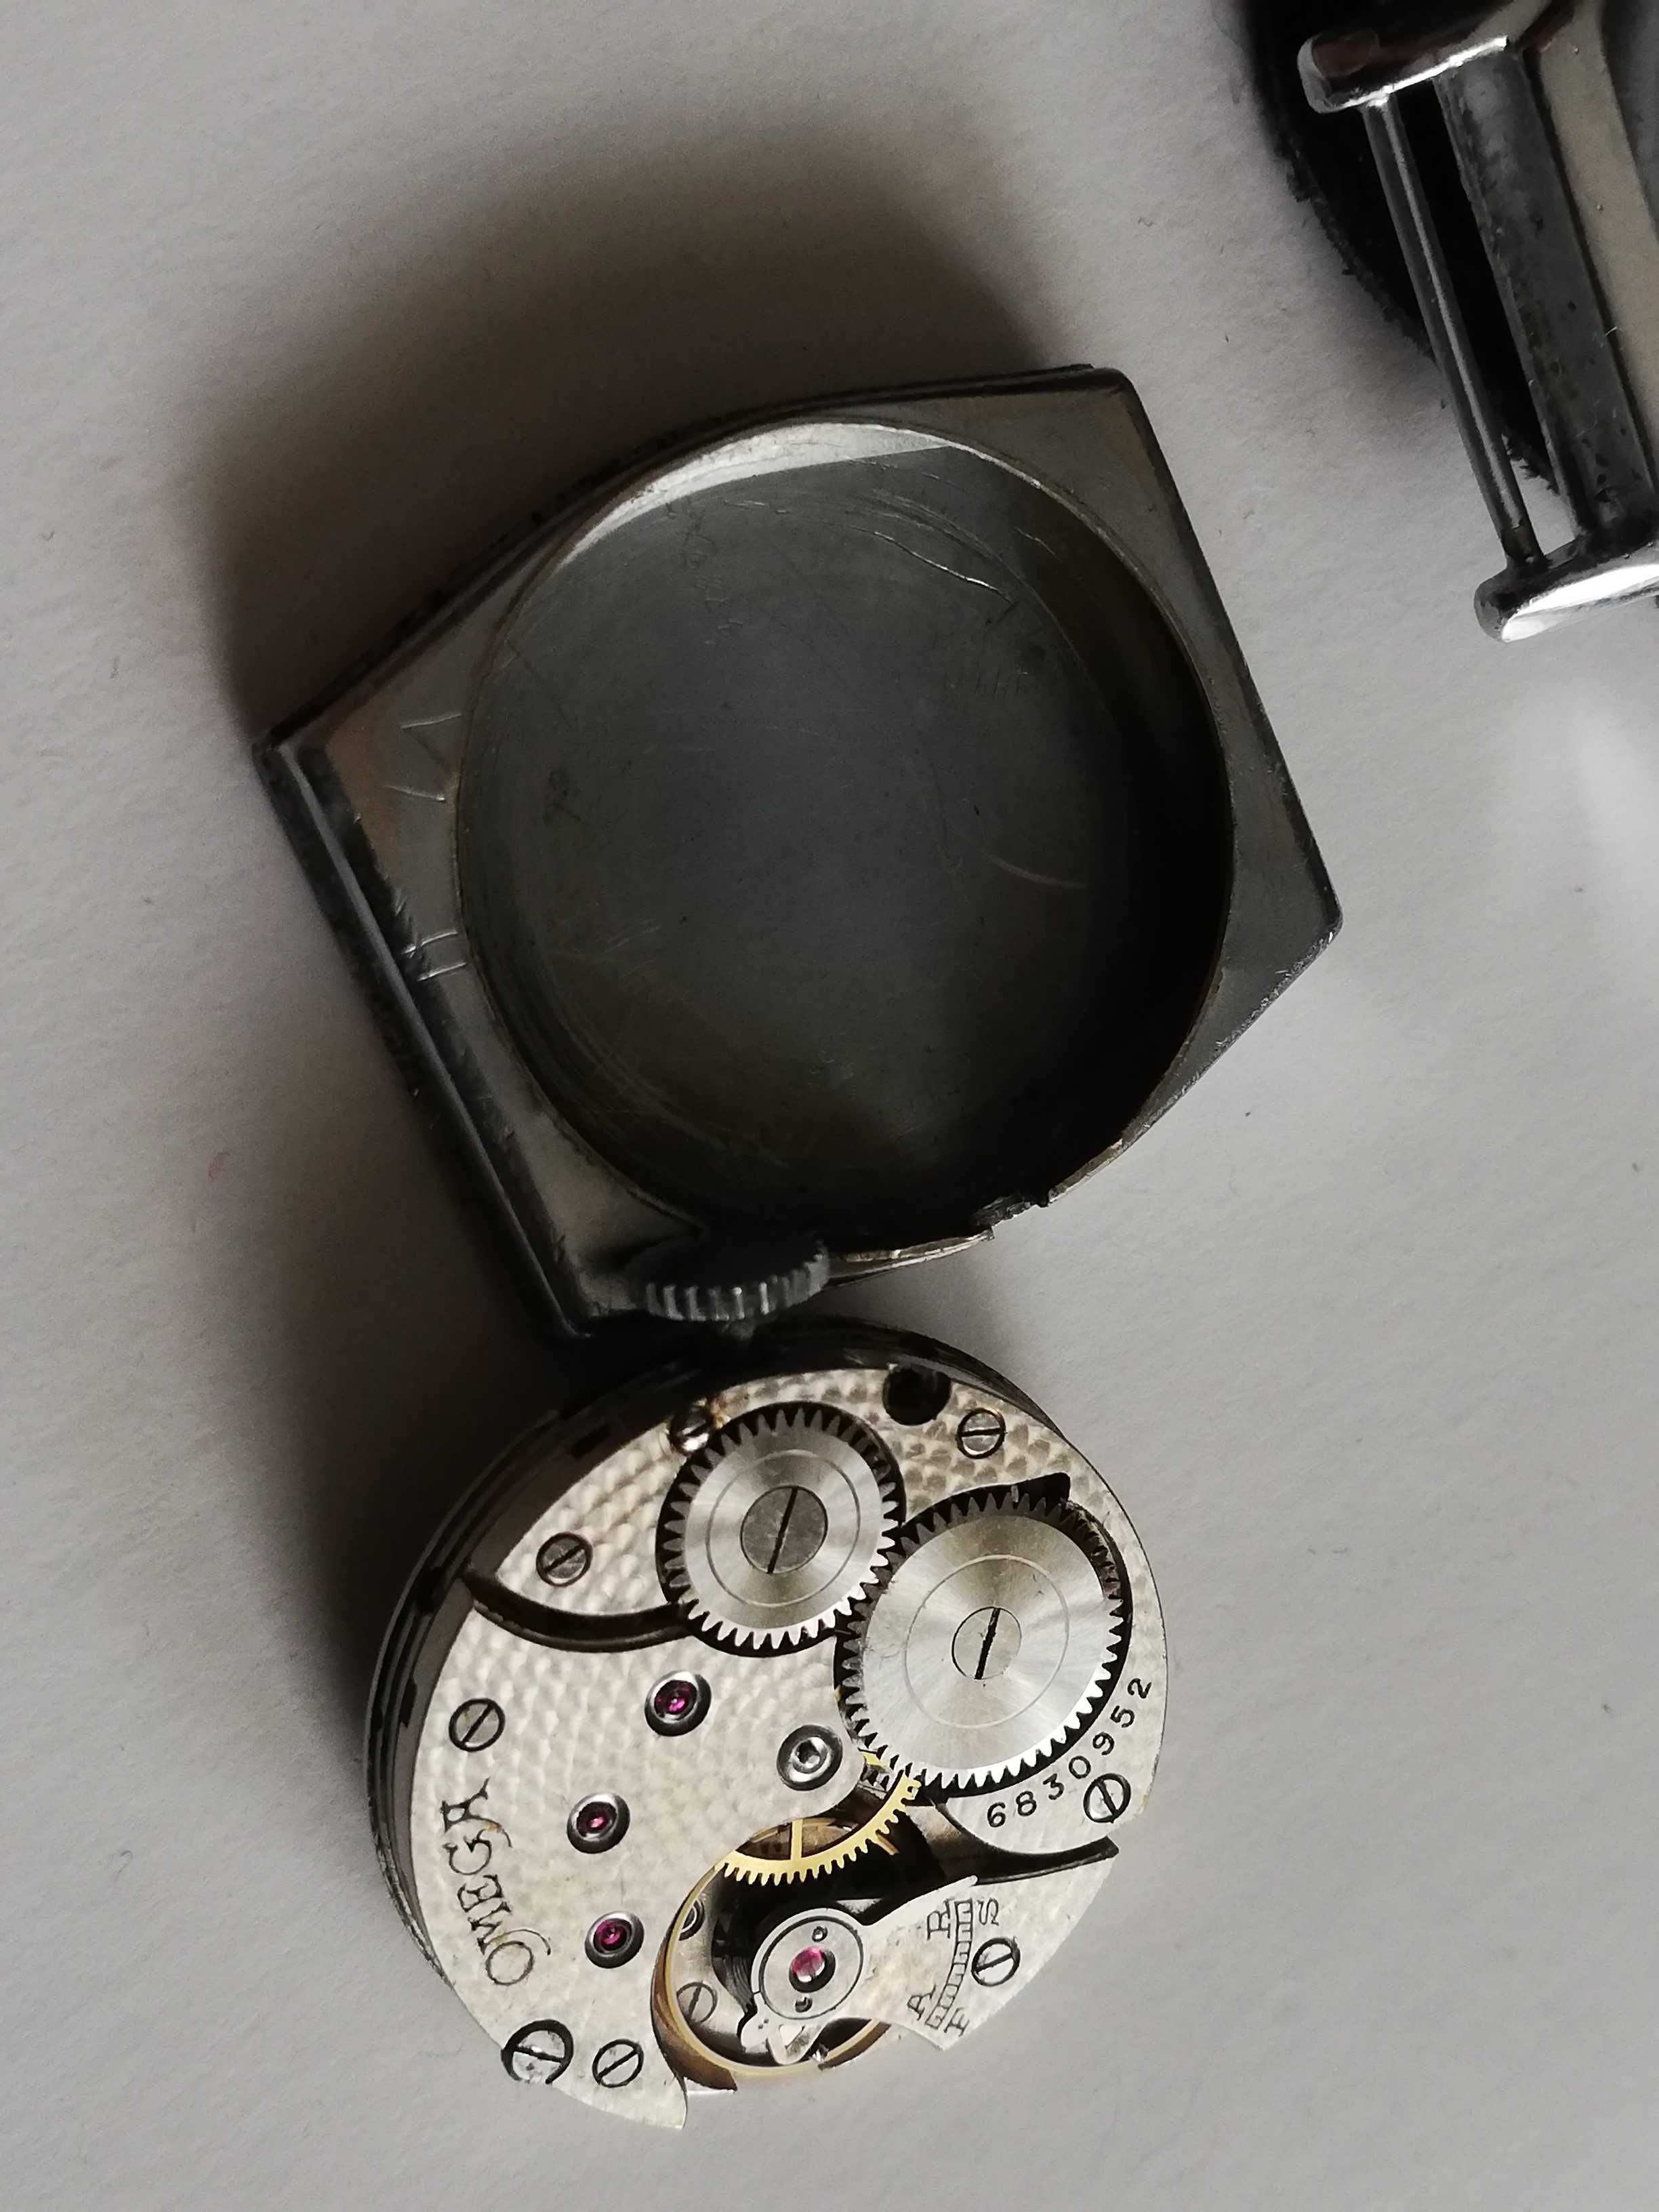 Sprzedam stary męski zegarek Omega styl Art deco 1927/28r